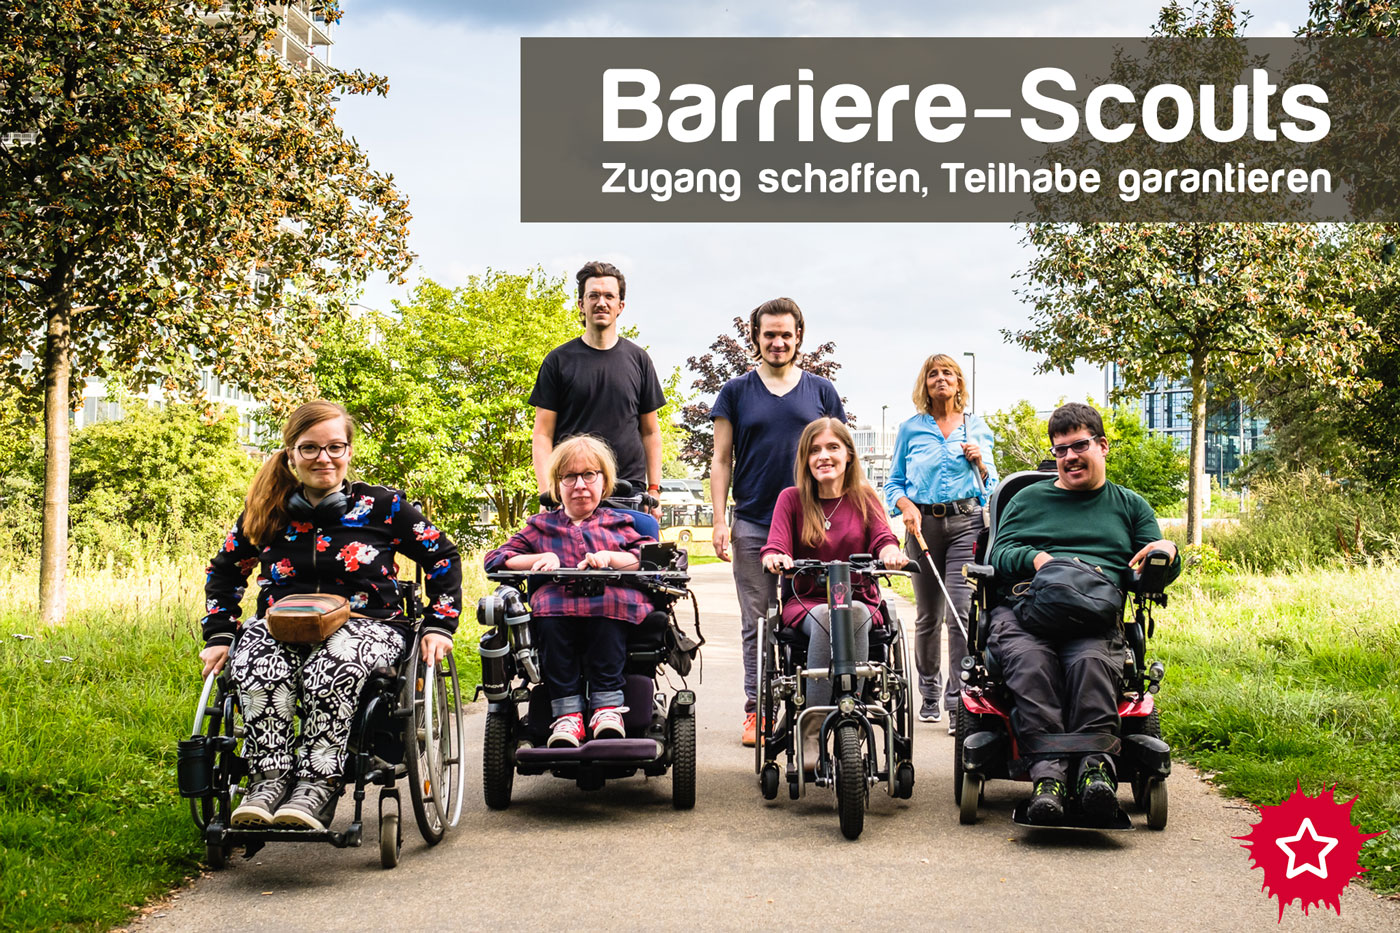 Sieben Menschen mit verschiedenen Behinderungen bewegen sich als Gruppe auf die Kamera zu. Einige sitzen z.B. im Rollstuhl, eine Frau benutzt einen Langstock. Darüber steht: Barriere-Scouts, Zugang schaffen, Teilhabe garantieren.